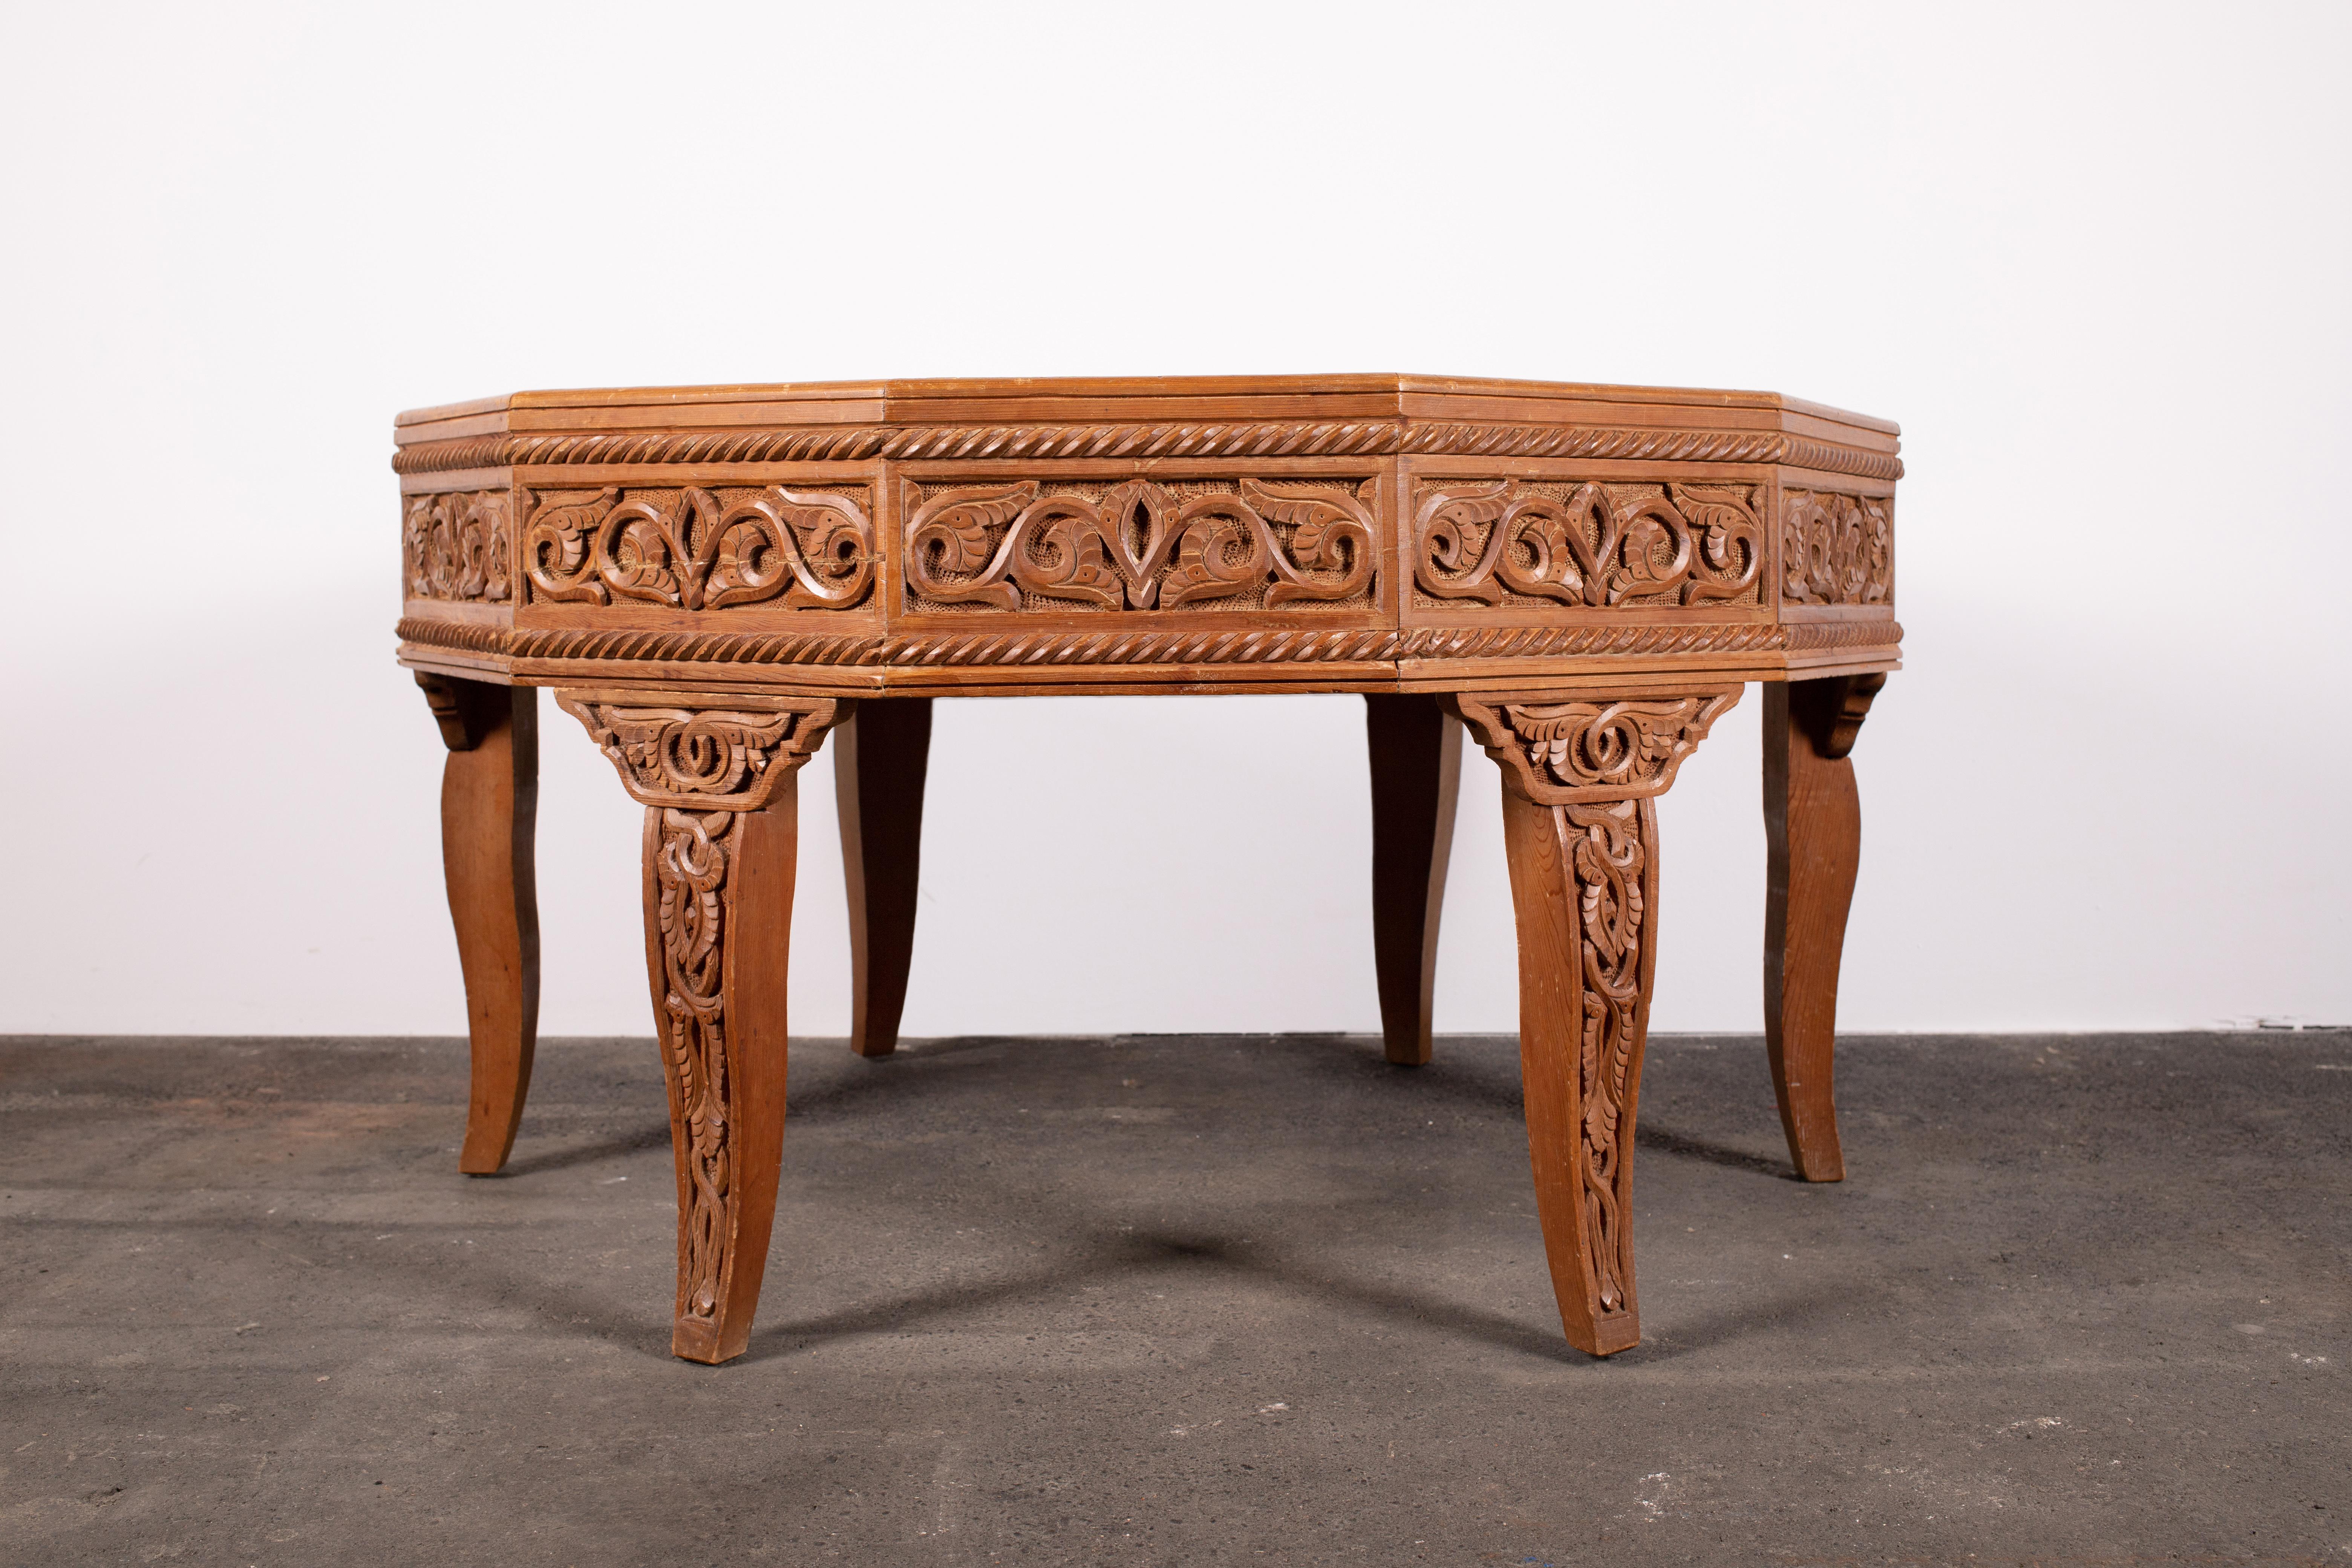 Außergewöhnliche Handwerkskunst und einmalig schönes Holz, beides aus einer vergangenen Zeit. Dieser 12-seitige Mitteltisch oder Couchtisch ist aus Atlas Cedar gefertigt. Ein Holz, das nur in bestimmten Gebieten des marokkanischen Atlasgebirges